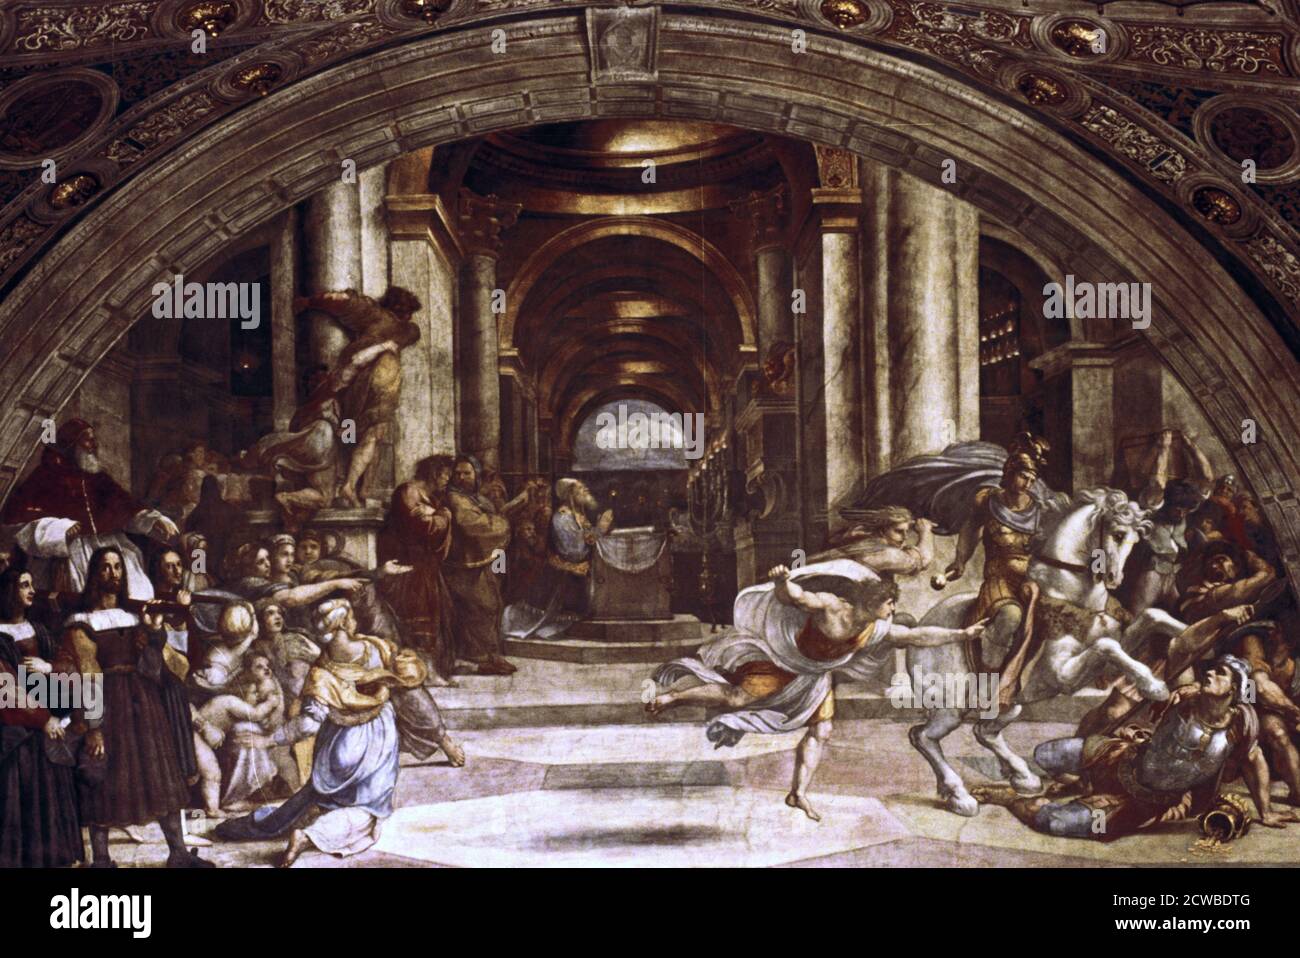 Die Vertreibung von Heliodorus aus dem Tempel', 1512-1514. Künstler: Raphael. Raphael (1483-1520) war ein italienischer Maler und Architekt der Hochrenaissance. Seine Arbeit wird für seine Klarheit der Form, Leichtigkeit der Komposition und visuelle Leistung der menschlichen Größe bewundert. Stockfoto